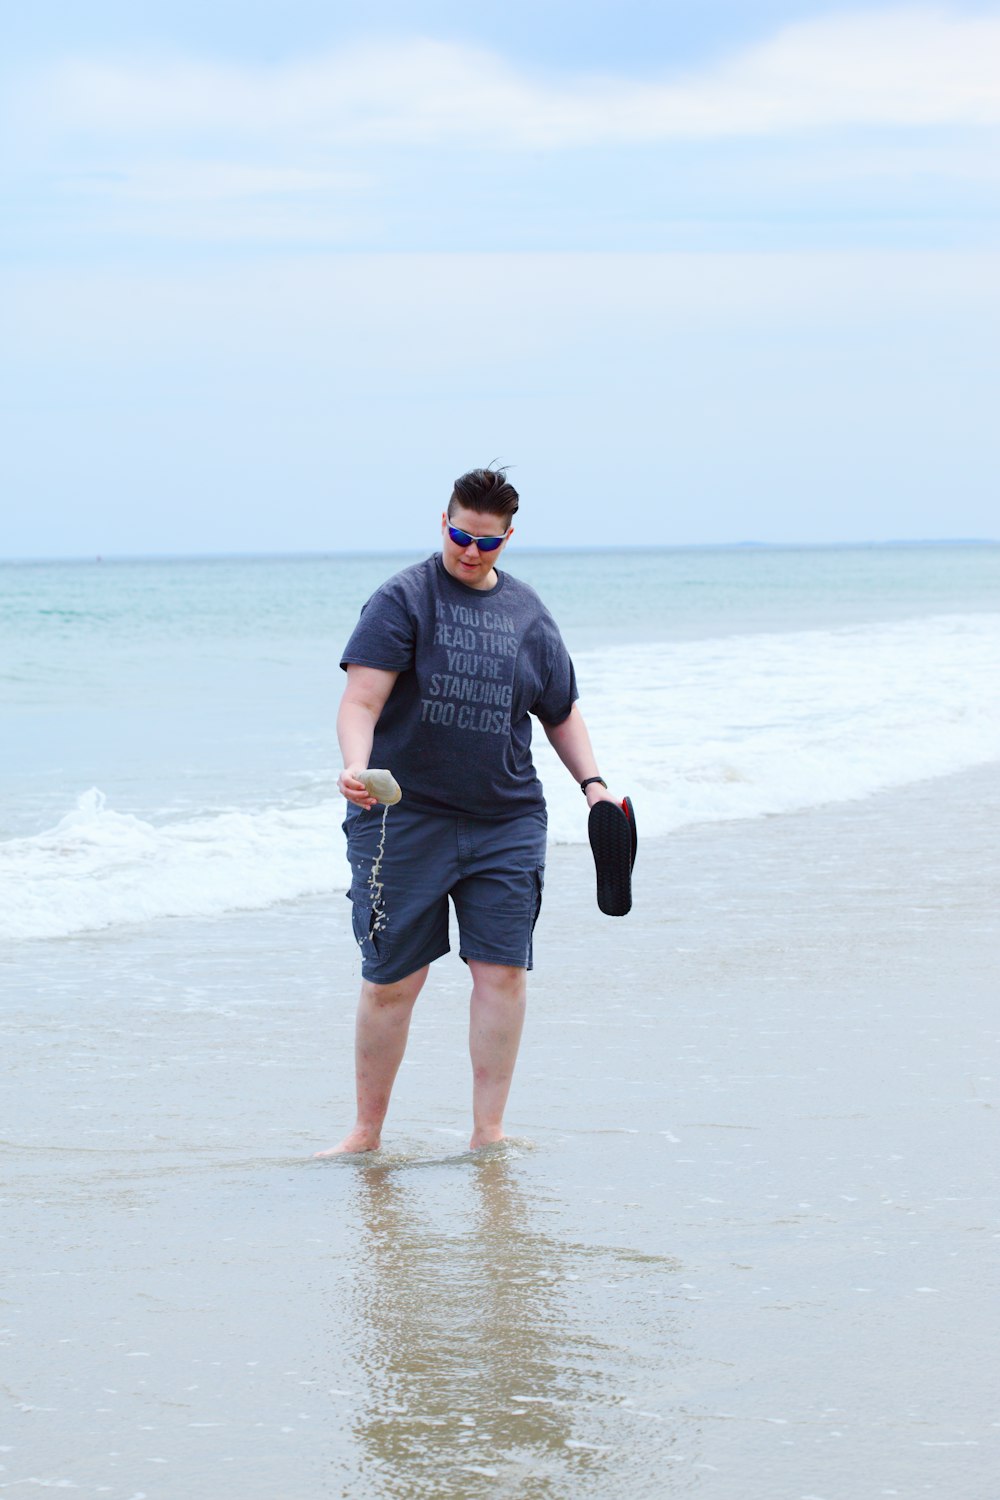 회색 크루넥 티셔츠를 입고 검은색 반바지를 입은 남자가 낮 동안 해변에서 뛰고 있다